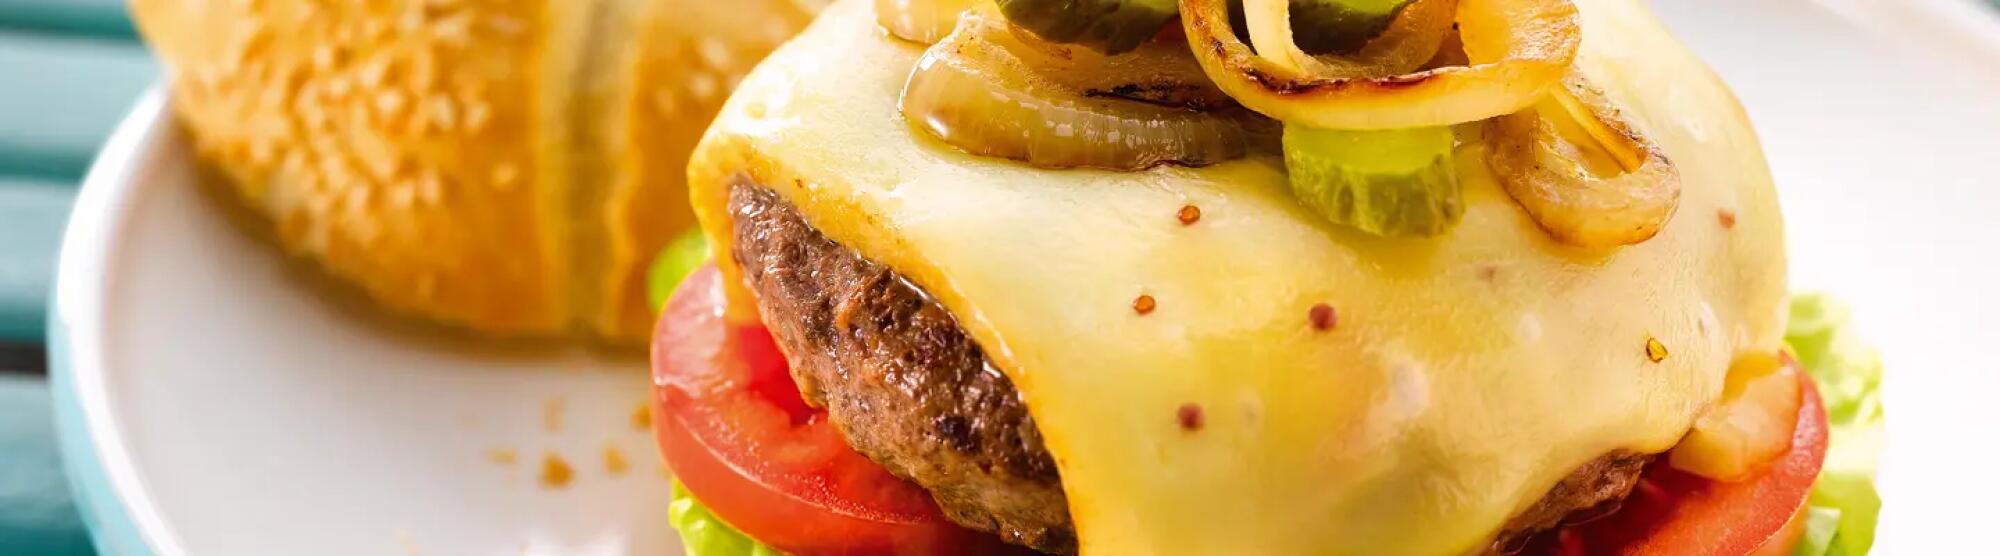 LA02_burger-fromage-raclette-RICHES MONTS